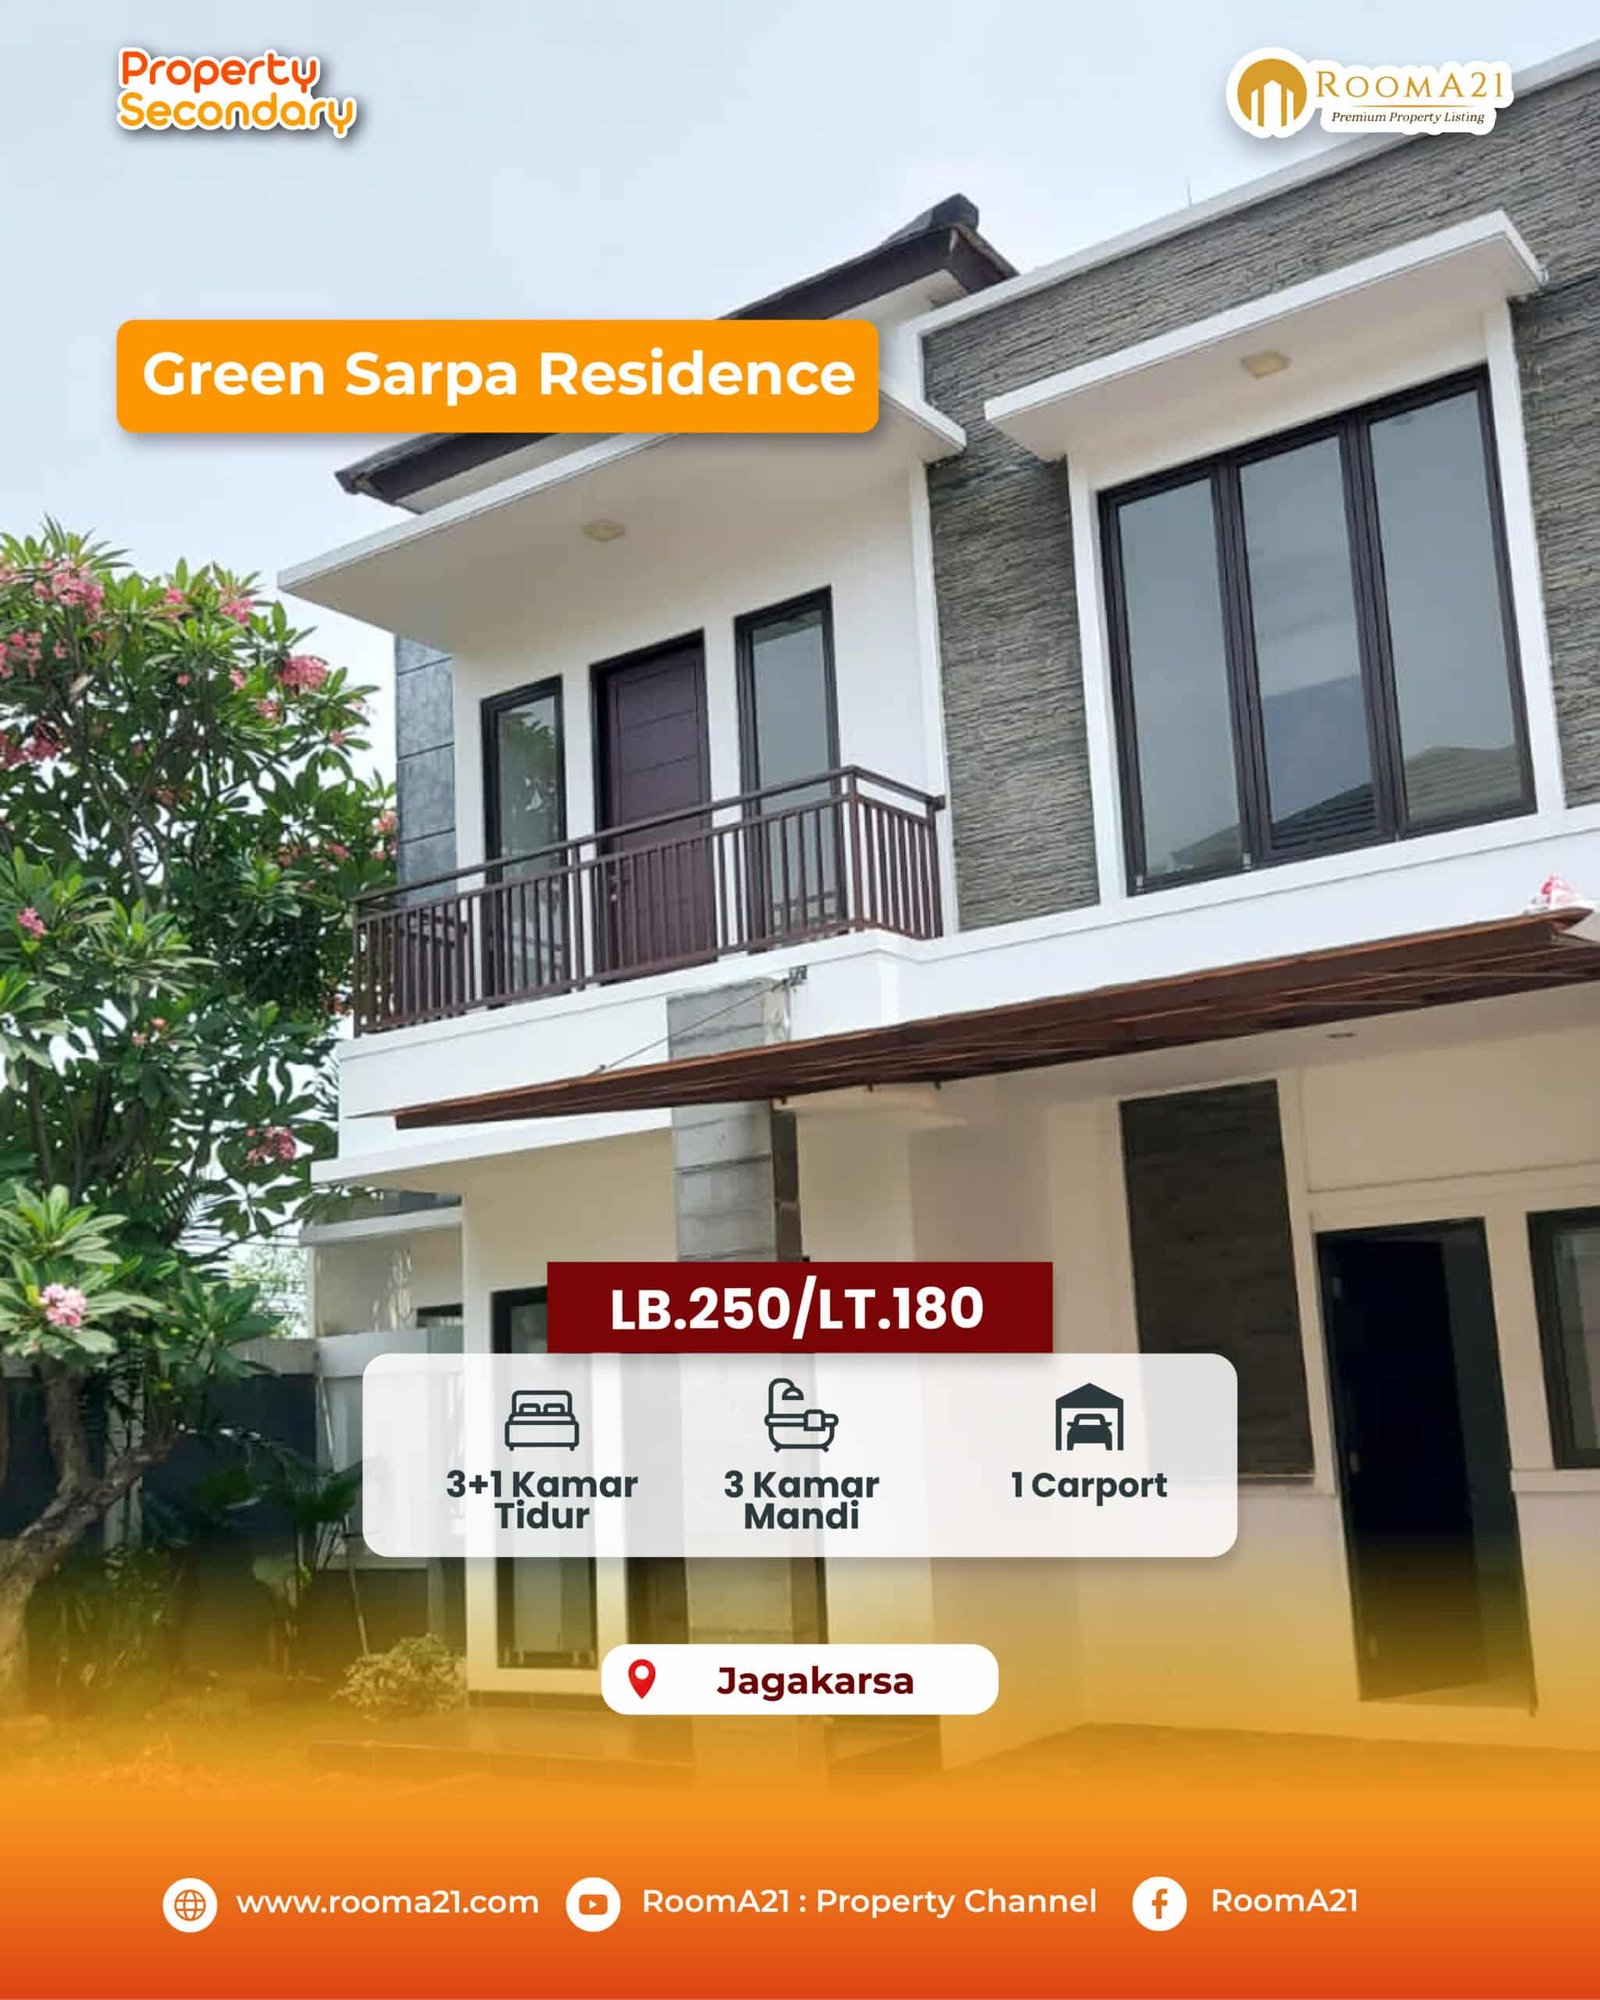 Dijual Rumah di Green Sarpa Residence, Jagakarsa – Jakarta Selatan